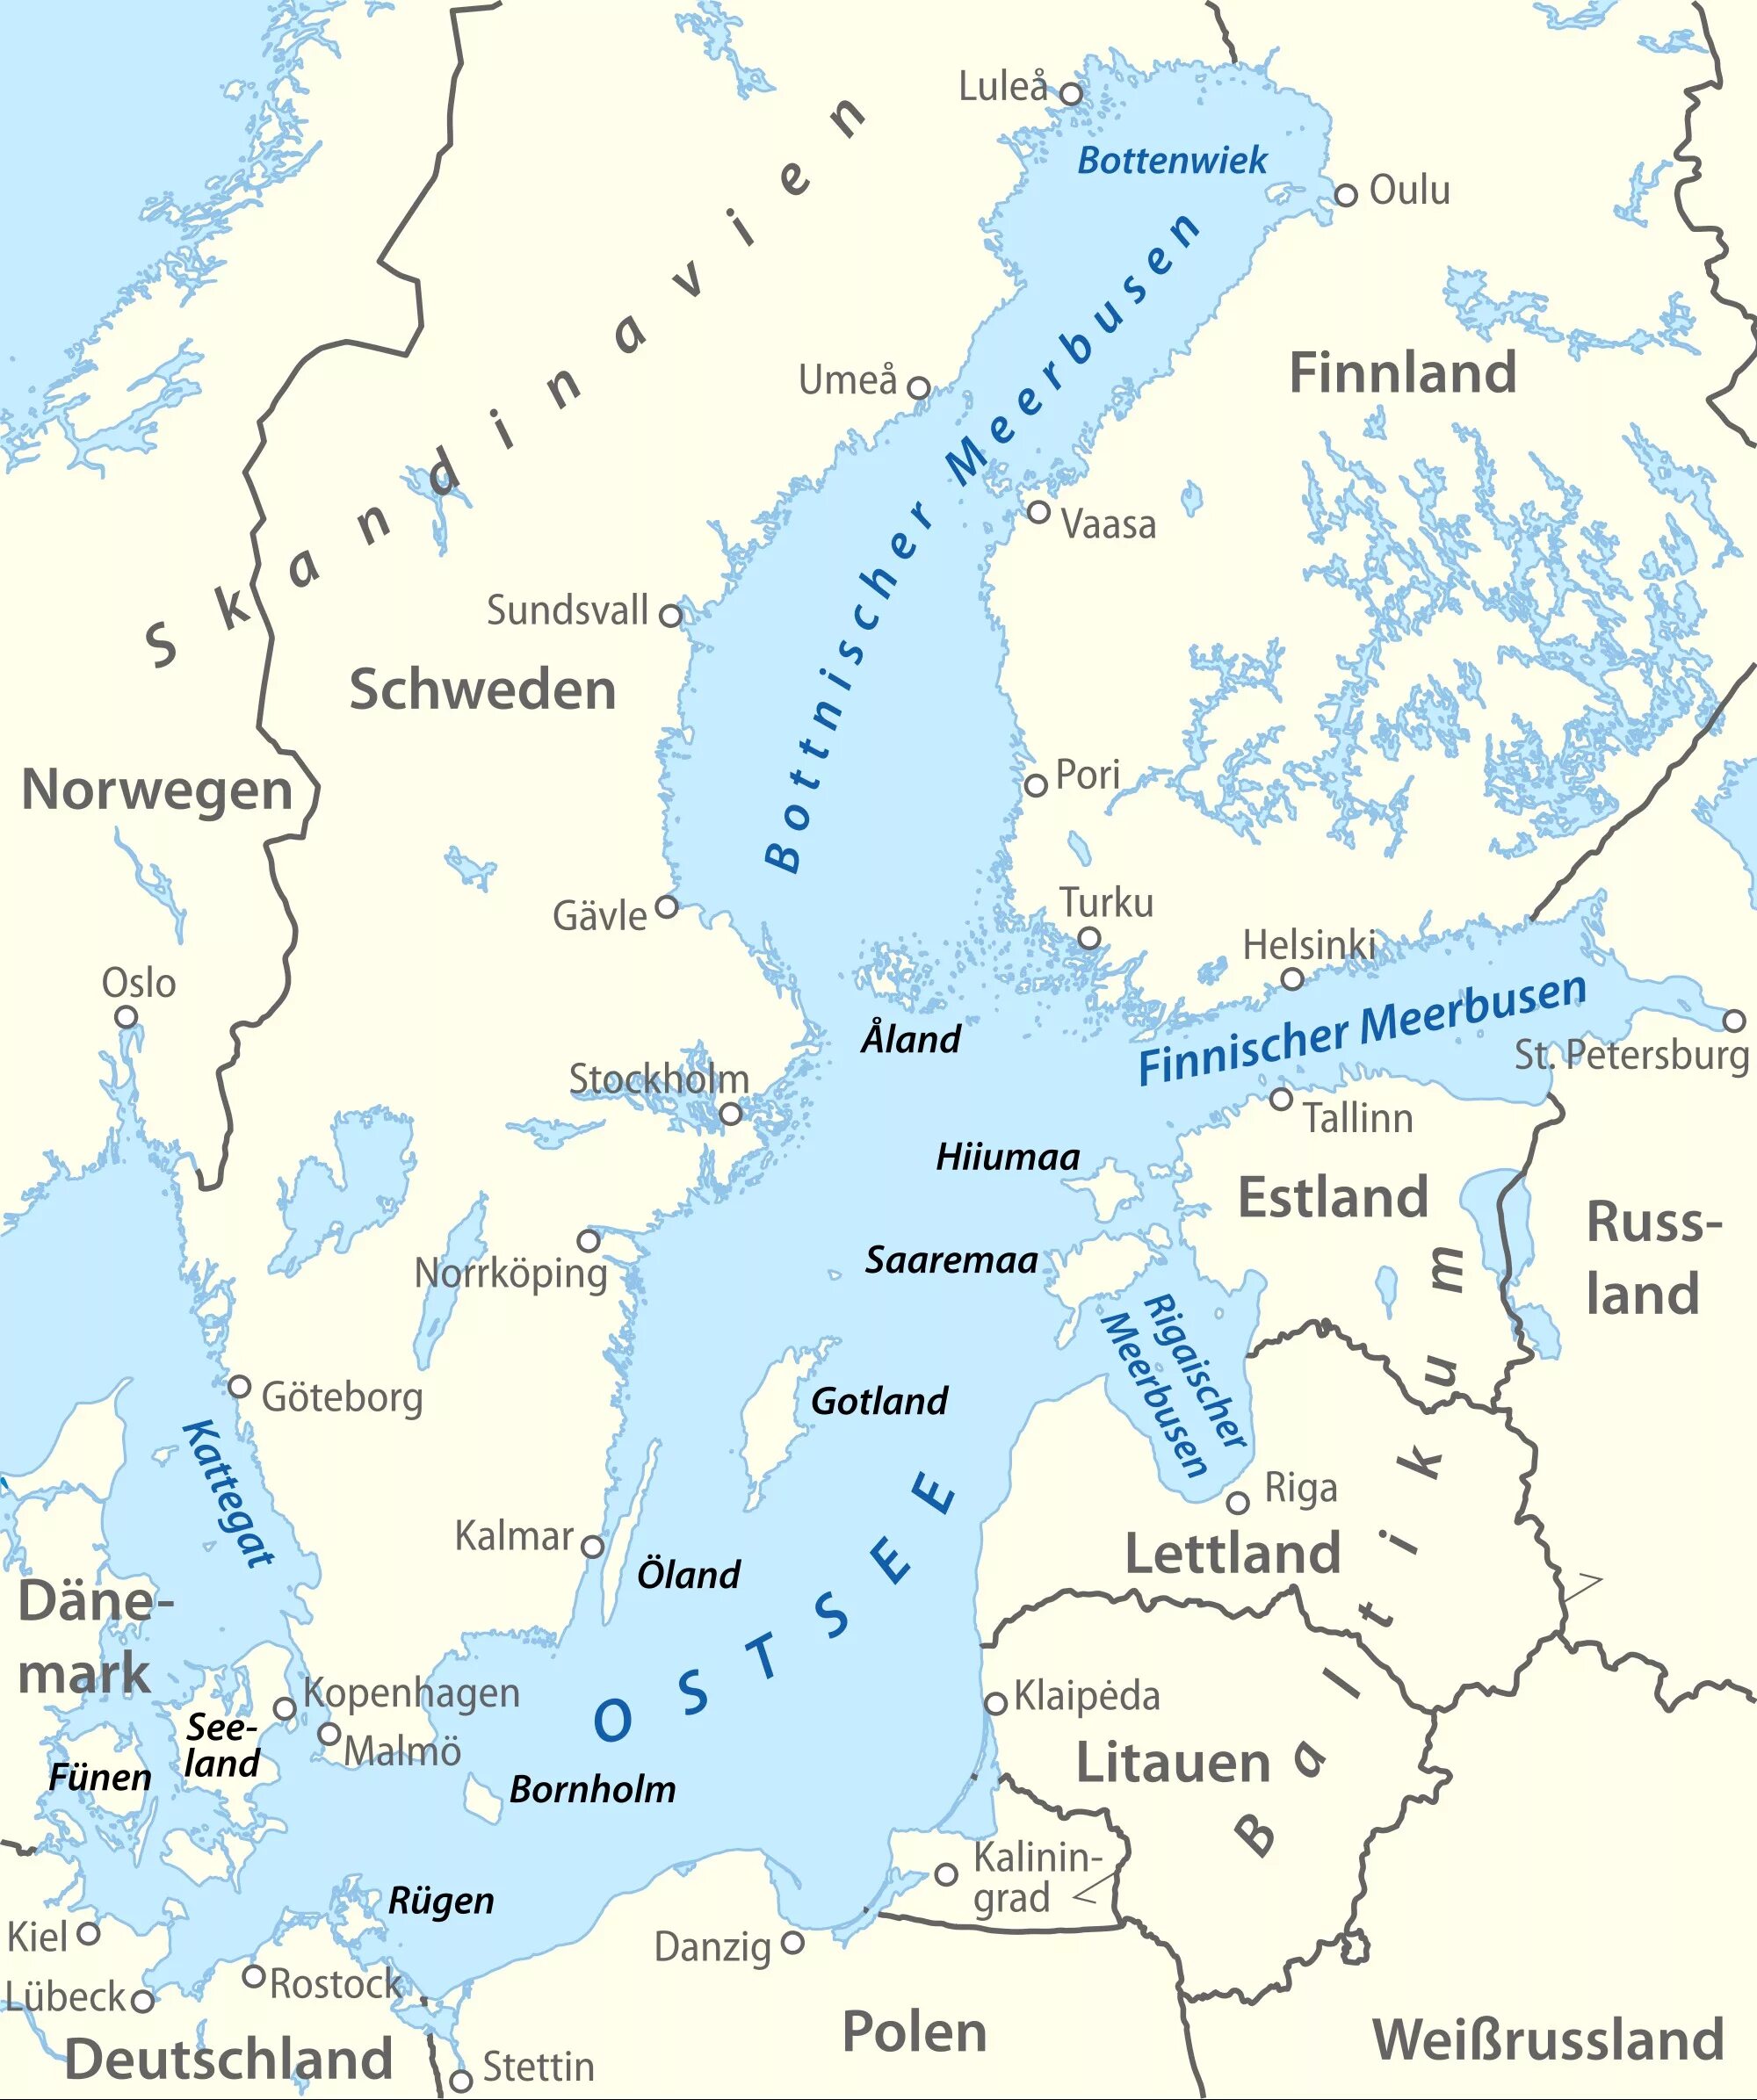 Готланд на карте балтийского моря кому принадлежит. Швеция остров Готланд на карте. Готланд остров в Балтийском море на карте. Остров Готланд на карте Балтийского моря. О Готланд на карте Балтийского моря.